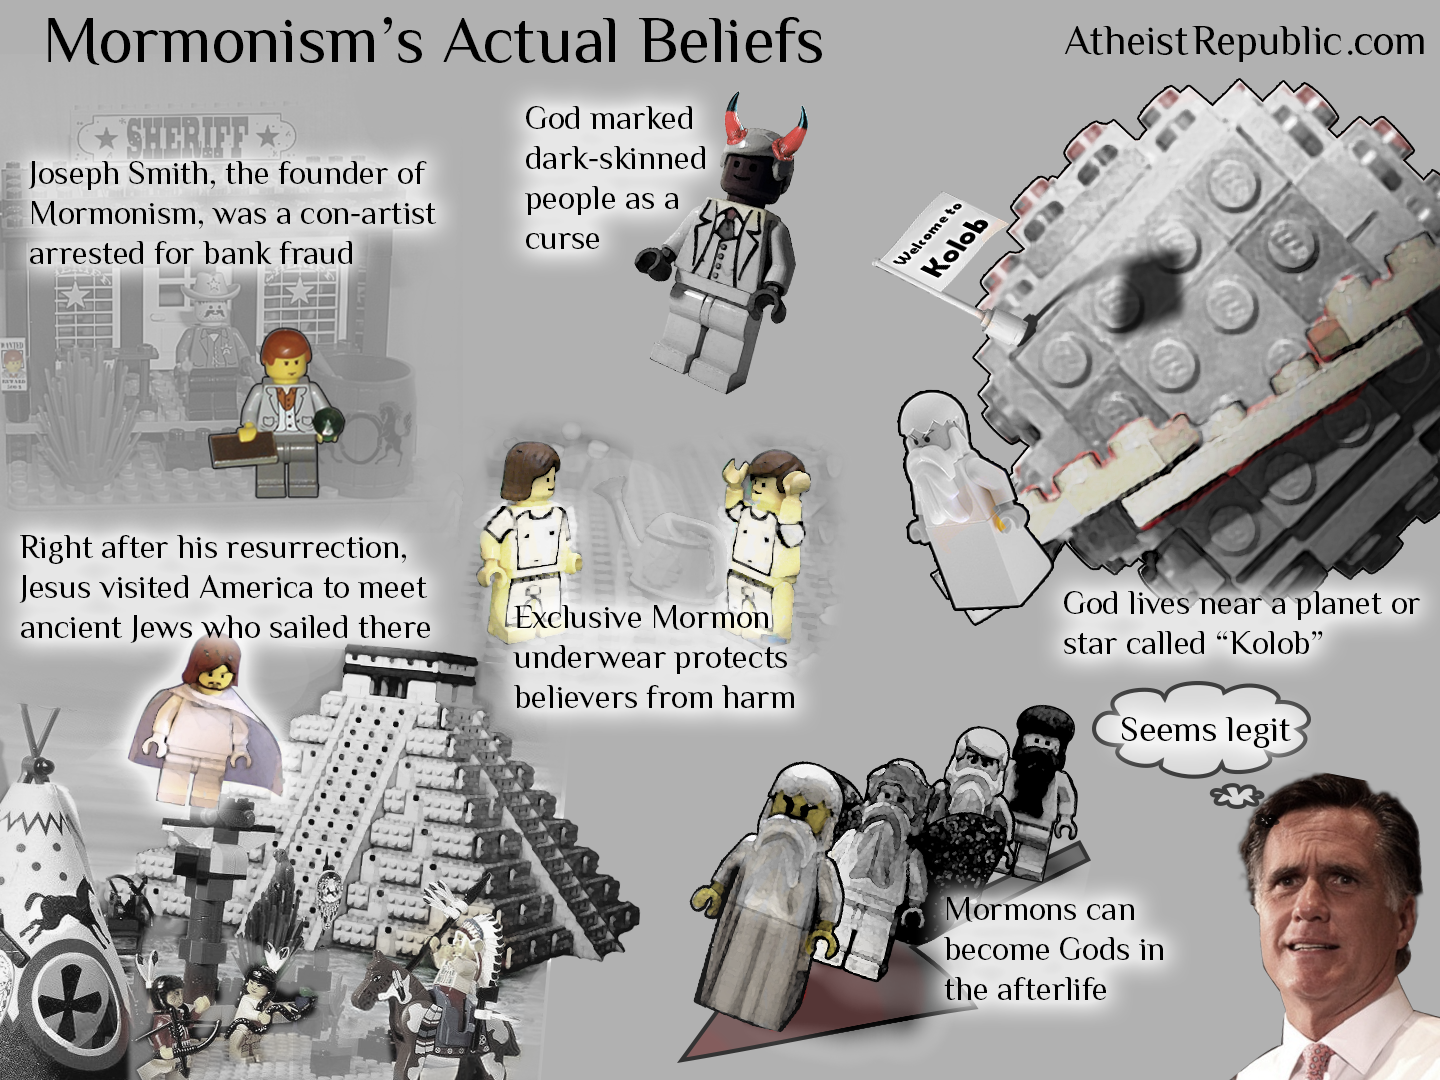 Mormon Beliefs